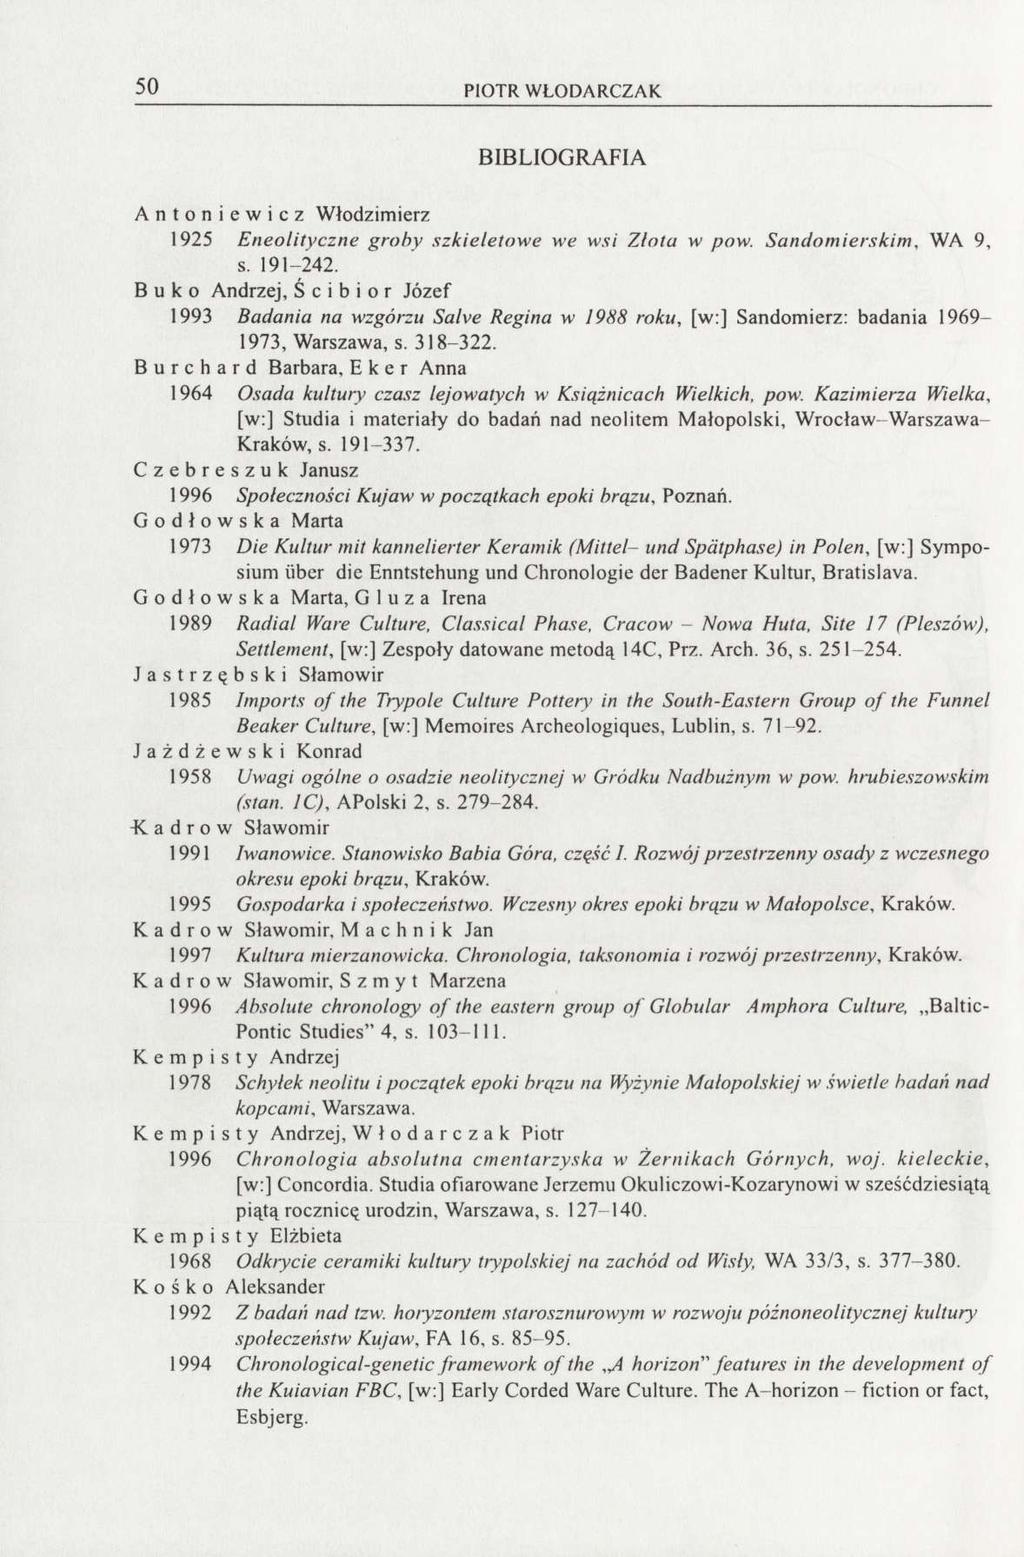 50 PIOTR WLODARCZAK BIBLIOGRAFIA Antoniewicz Włodzimierz 1925 Eneolityczne groby szkieletowe we wsi Zlotu w pow. Sandomierskim, WA 9, s. 191-242.